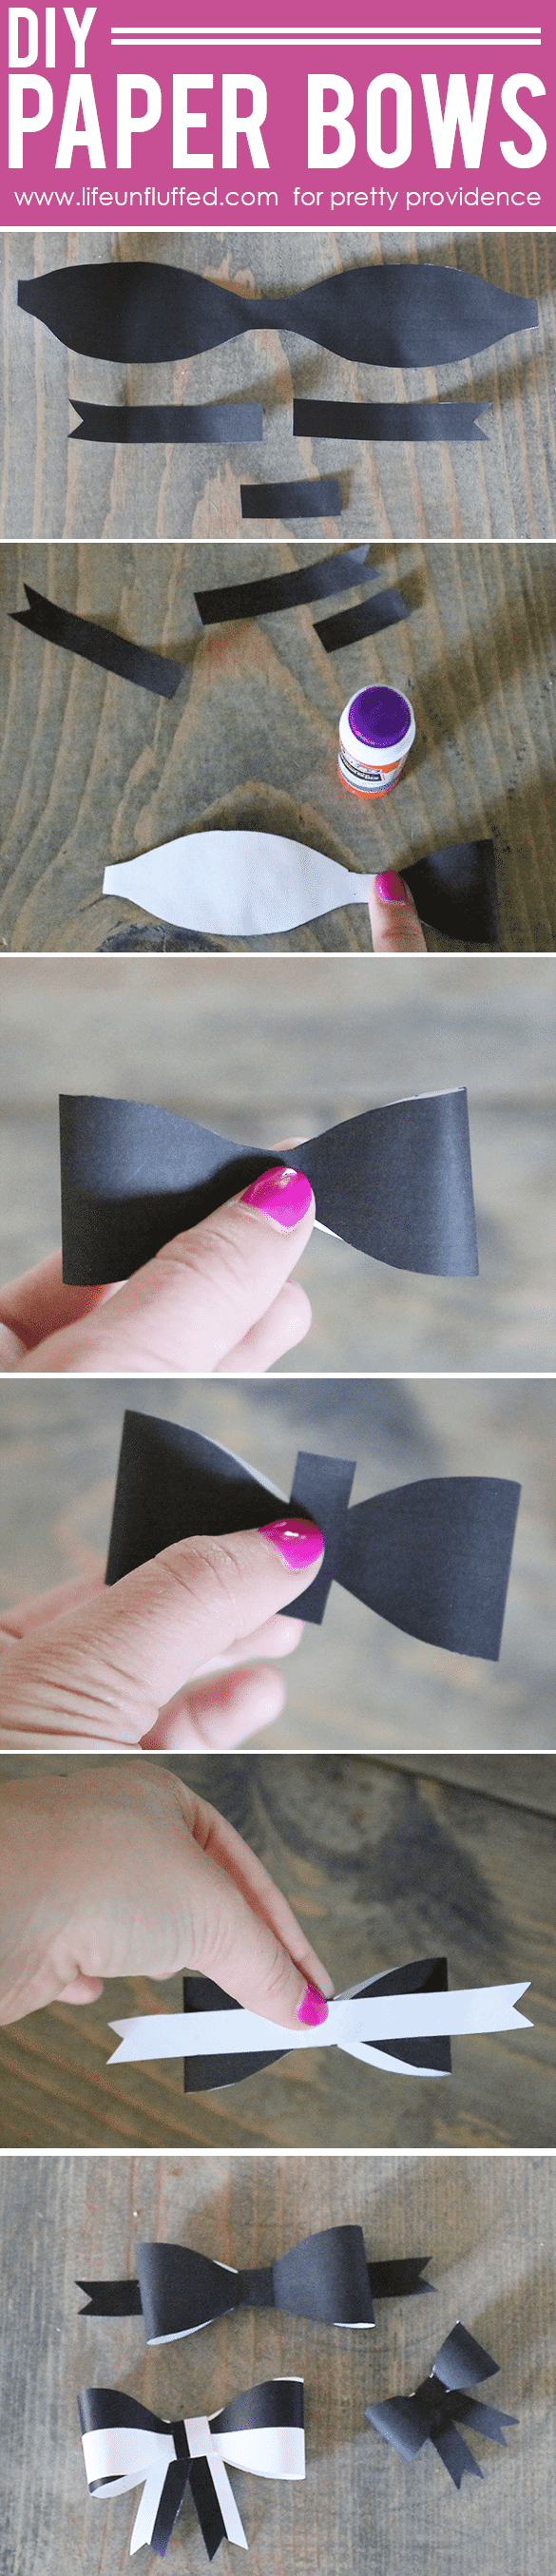 diy paper bows